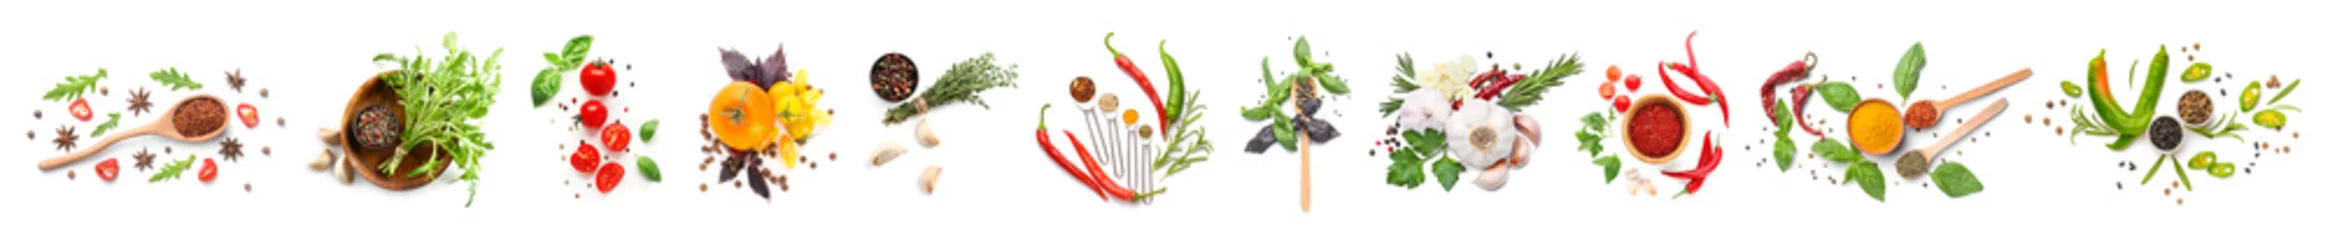 Fototapete Frisches Gemüse Verschiedene frische Gewürze, Kräuter und Gemüse auf weißem Hintergrund